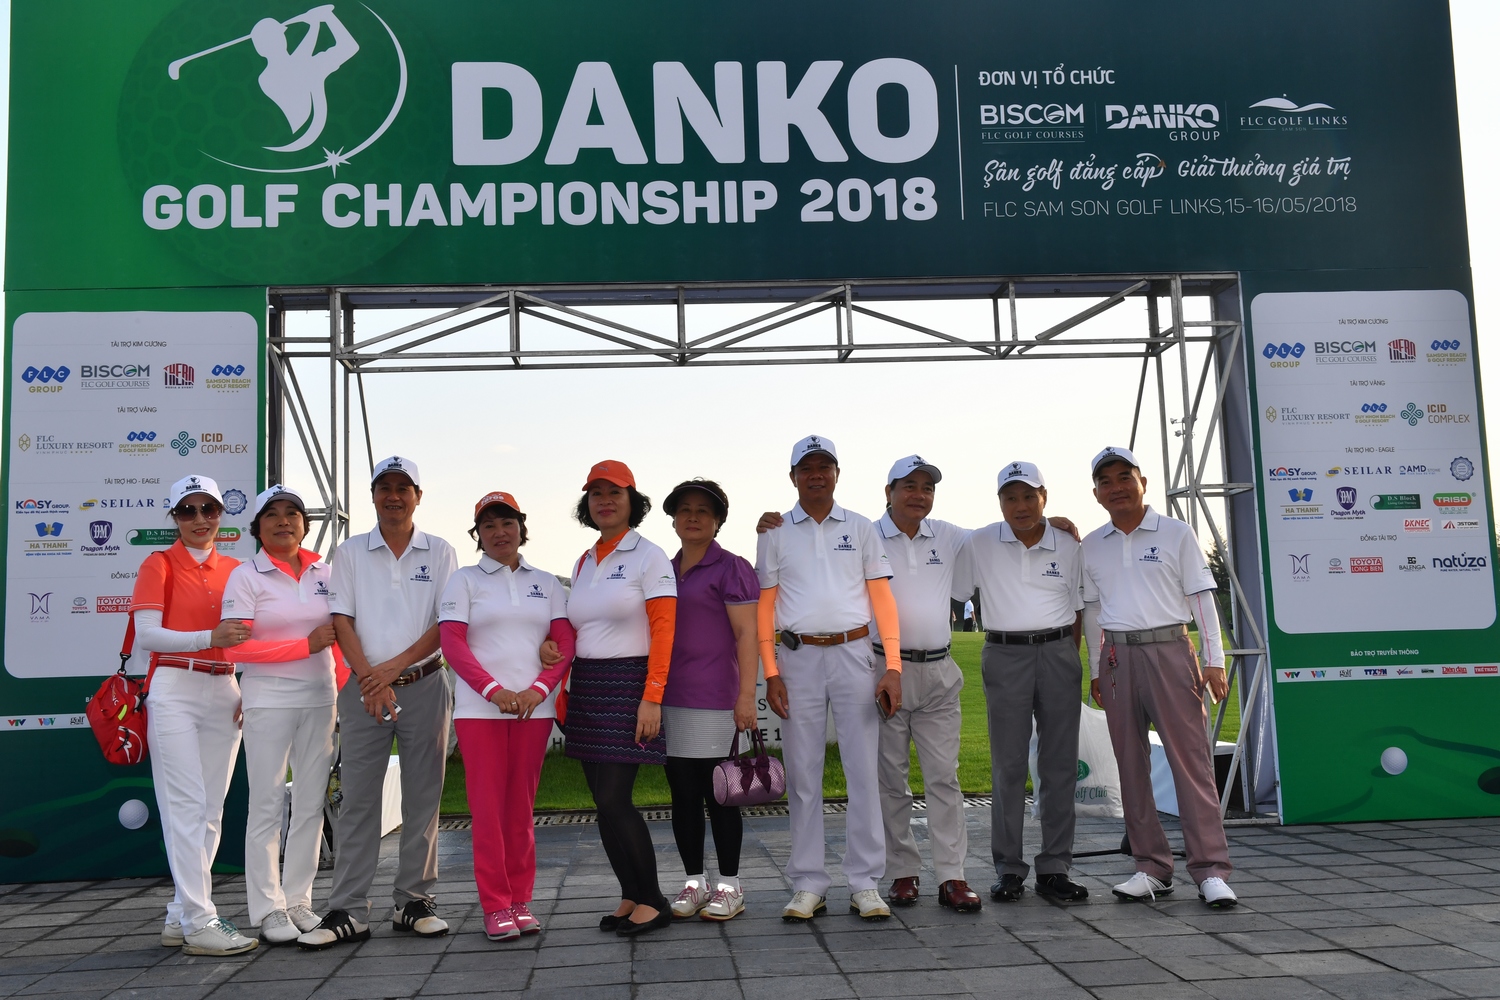 Hơn 600 golfer chính thức tranh tài tại Danko Golf Championship 2018